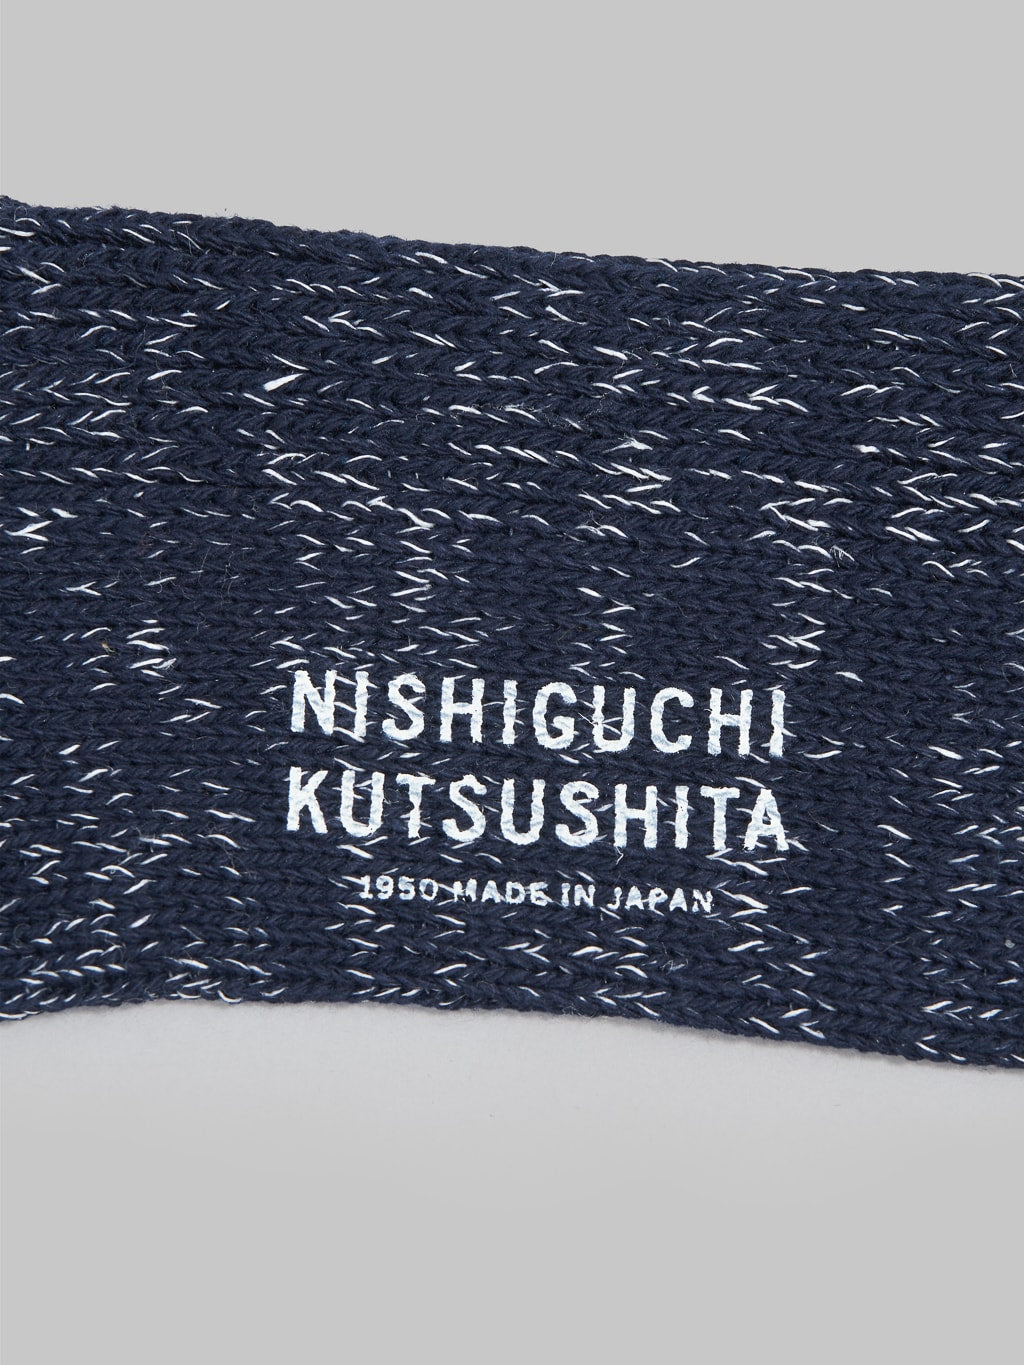 Nishiguchi Kutsushita Hemp Cotton Ribbed Socks Midnight Brand Logo